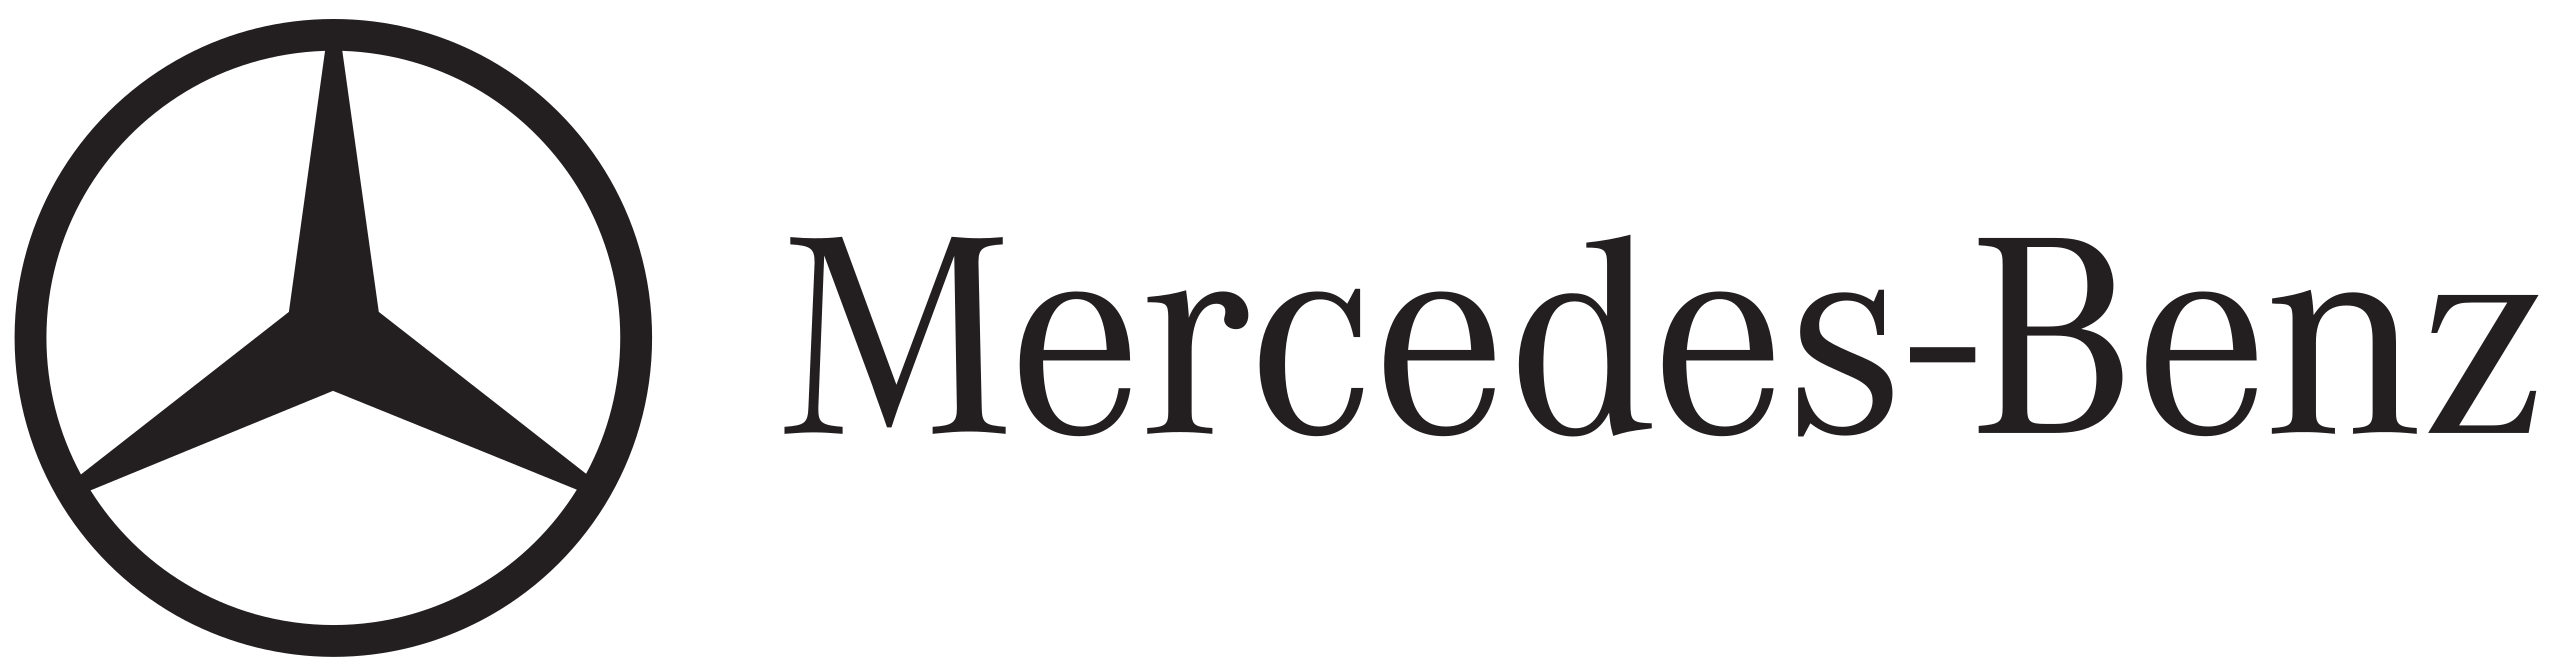 Mercedes Logo Transparent Background